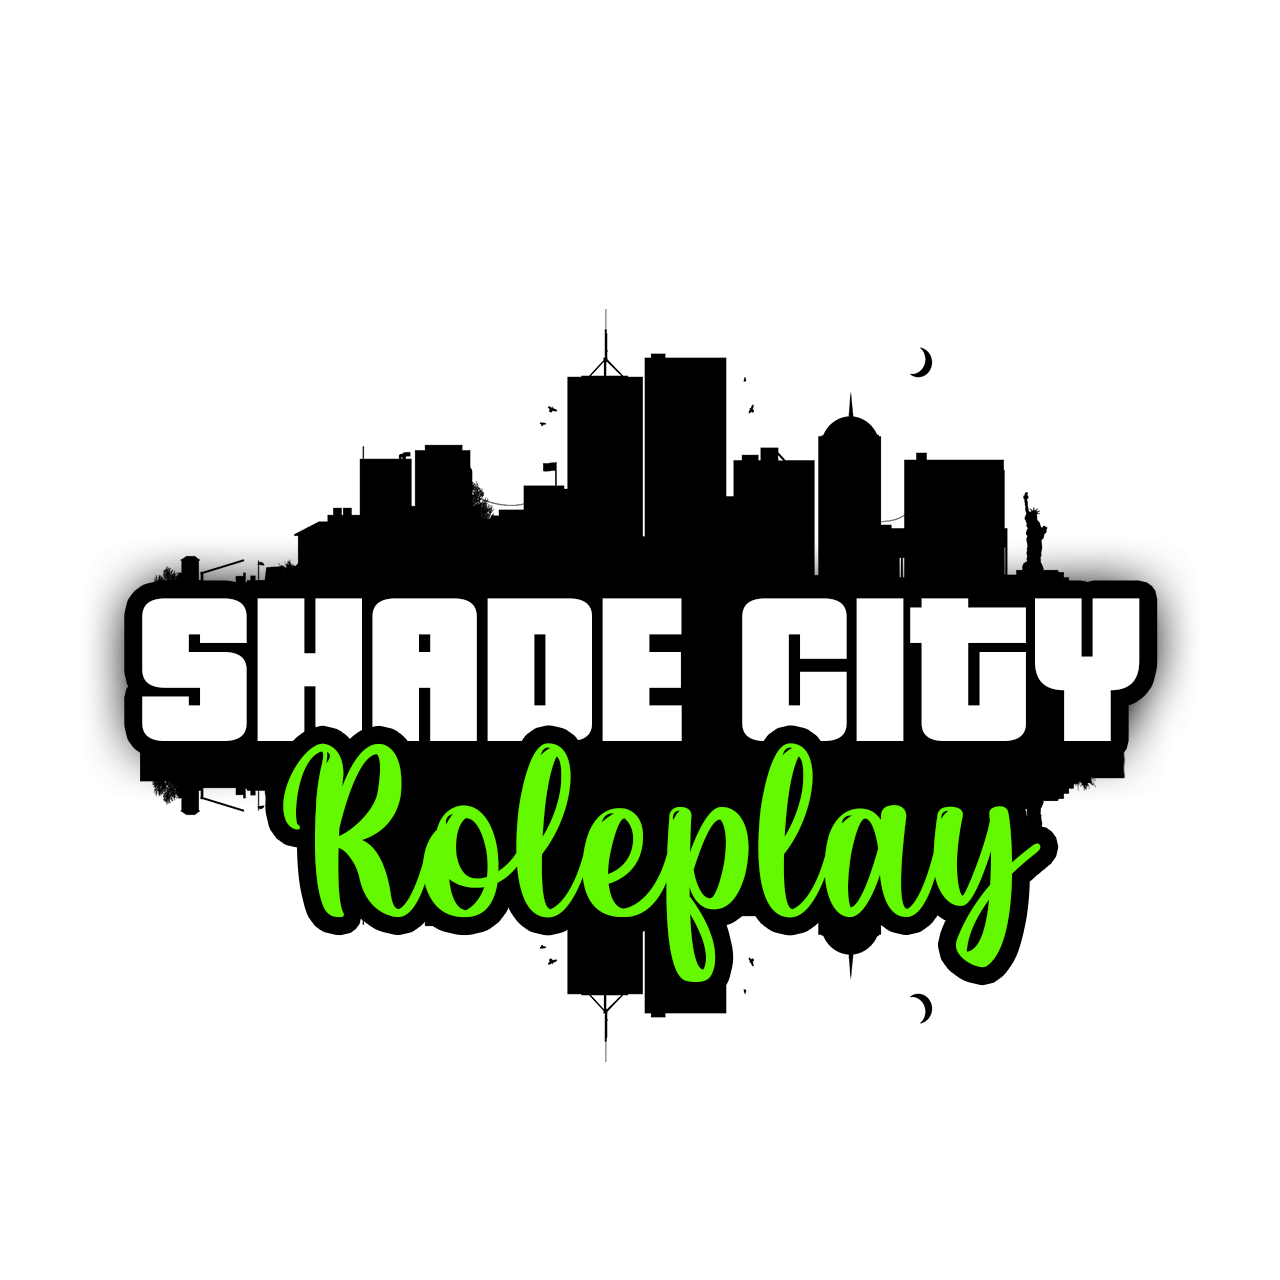 ShadeCity Roleplay